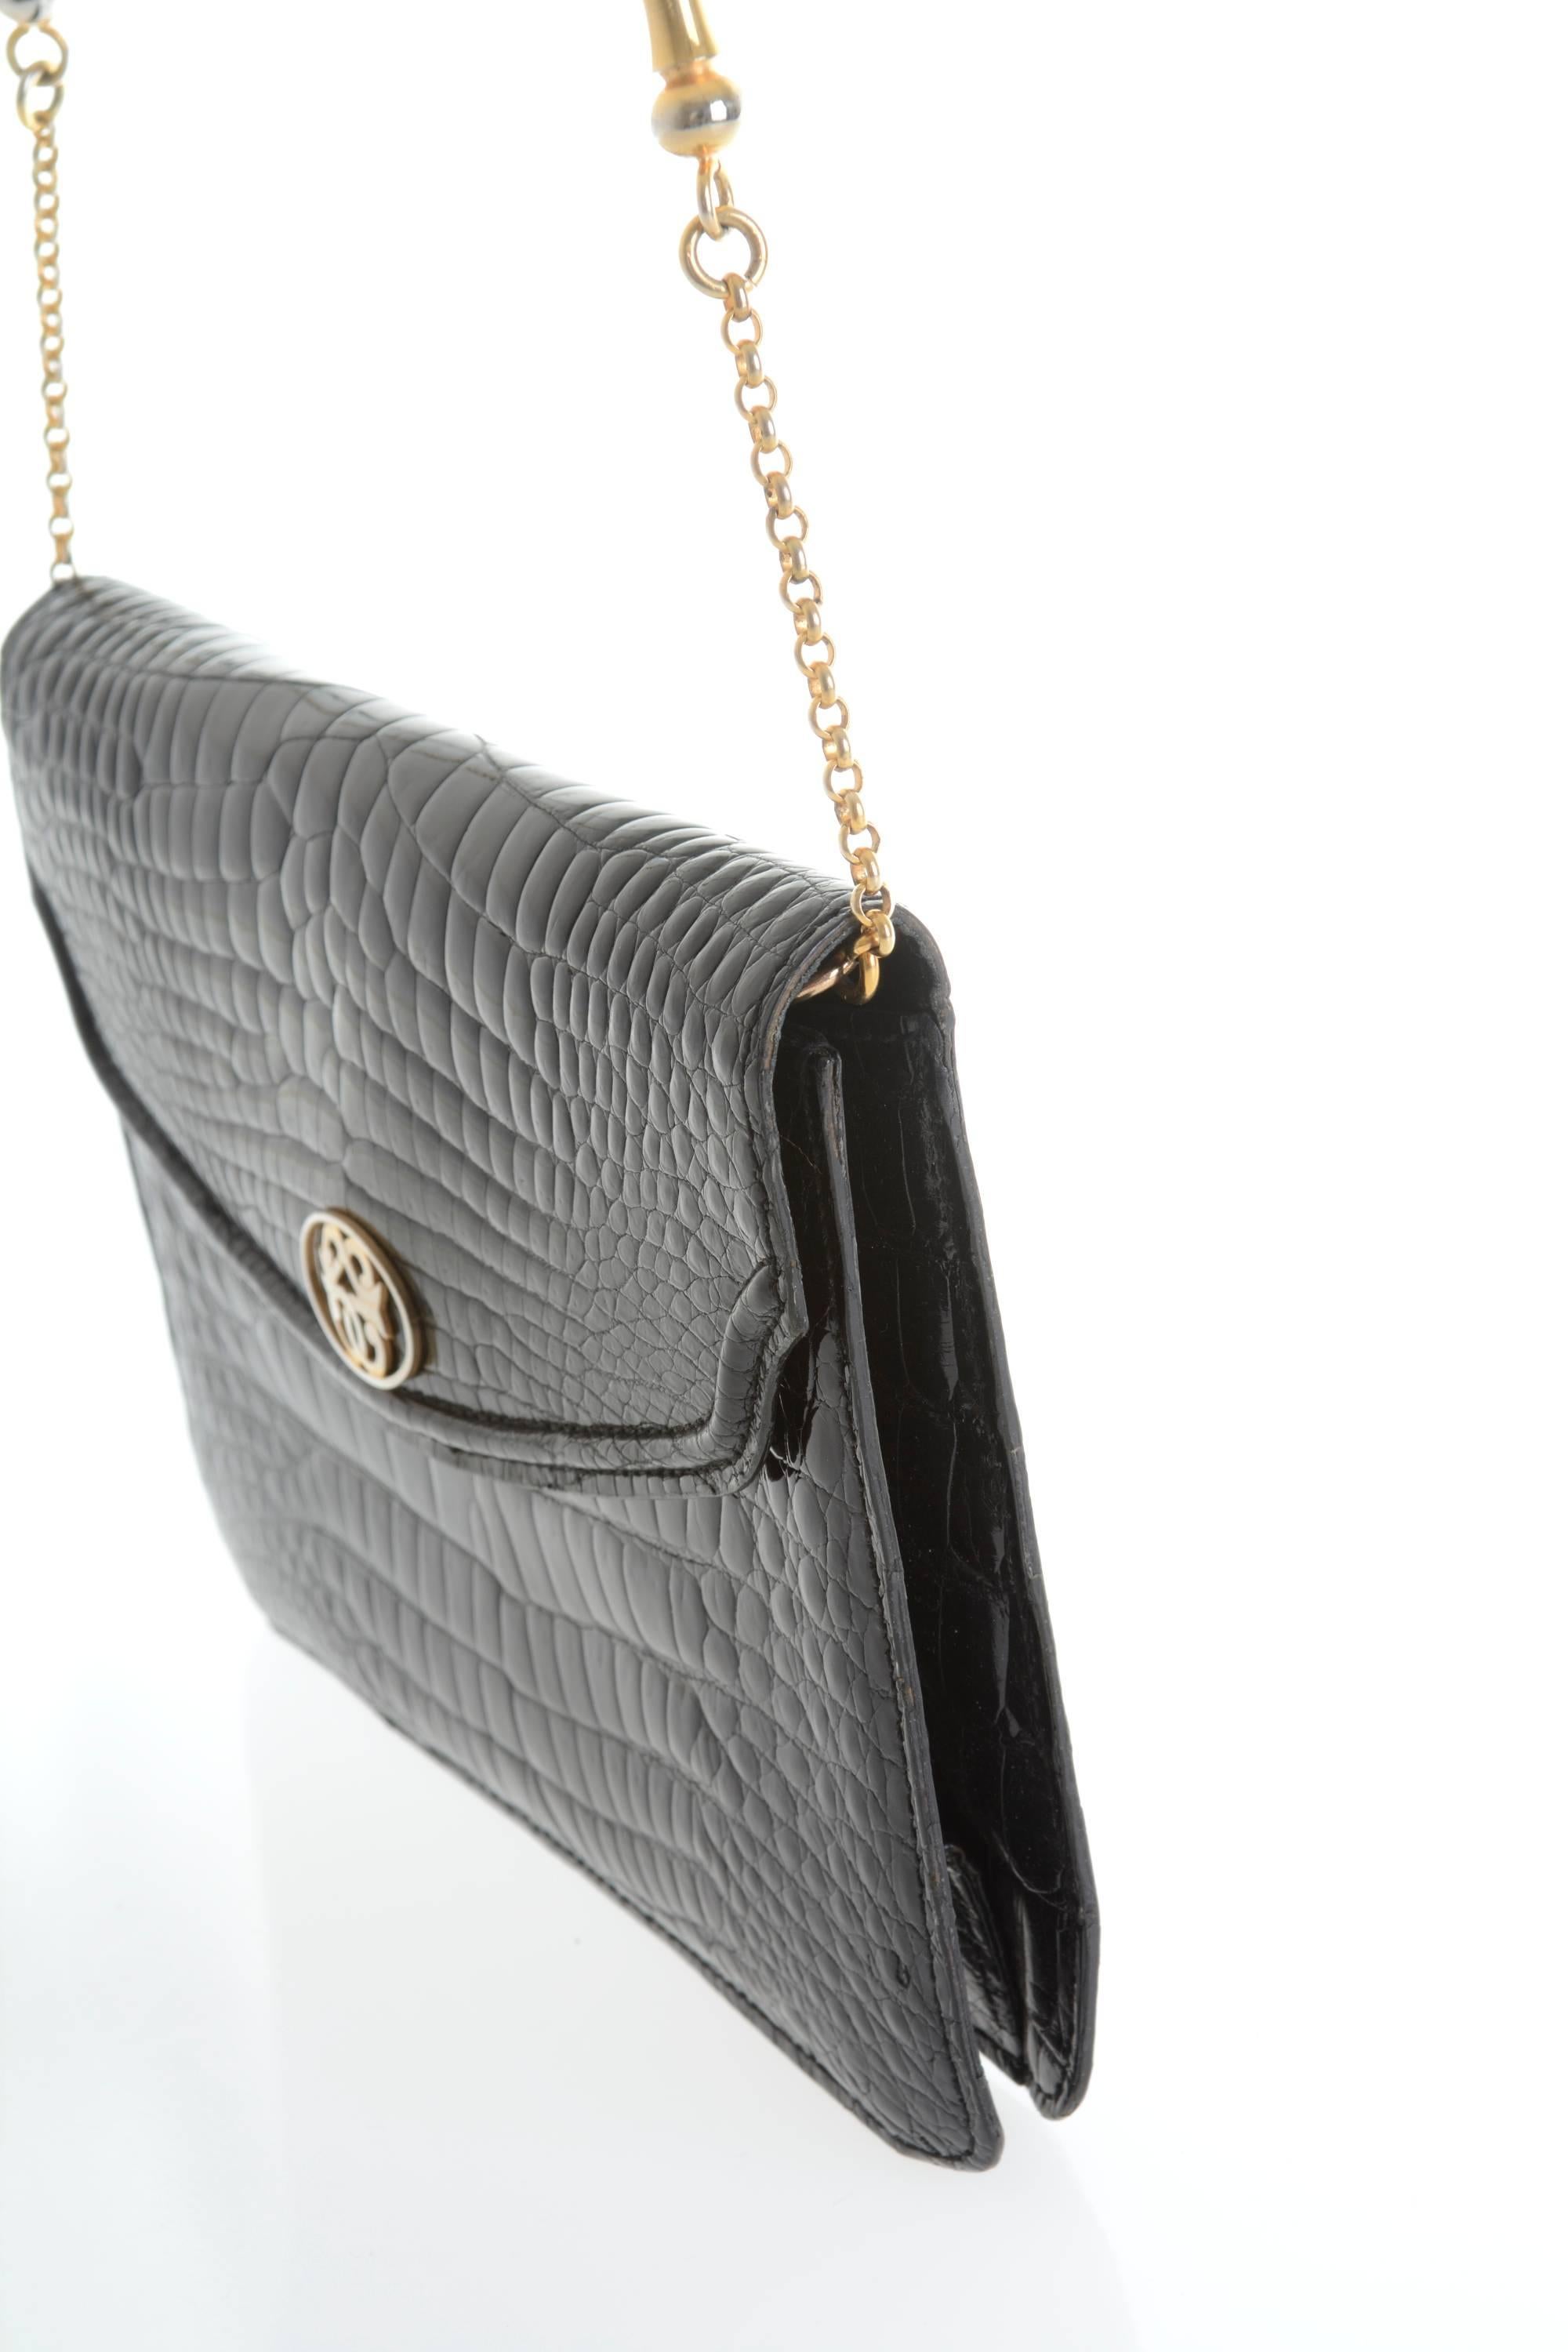 1960s PIROVANO Italian Couture Black Crocodile Clutch Shoulder Bag For Sale 1